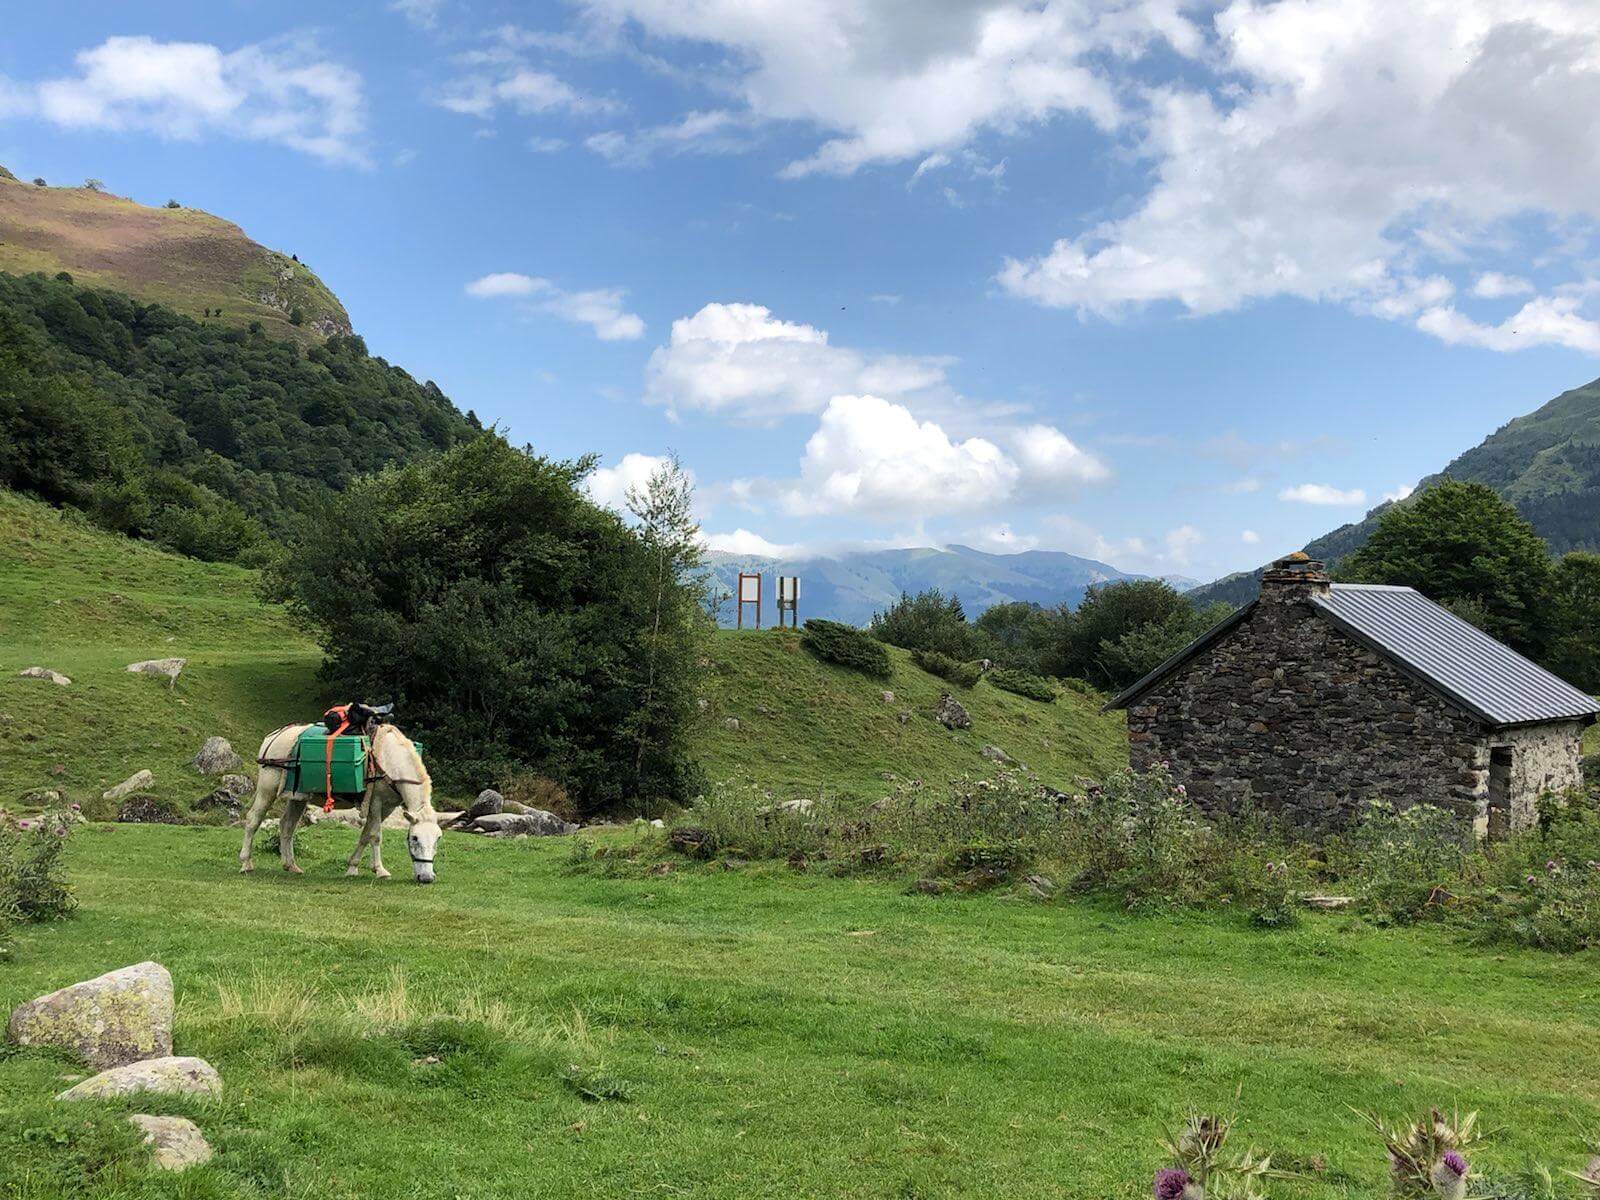 Randonnée à cheval dans les Pyrénées, mulet bâté